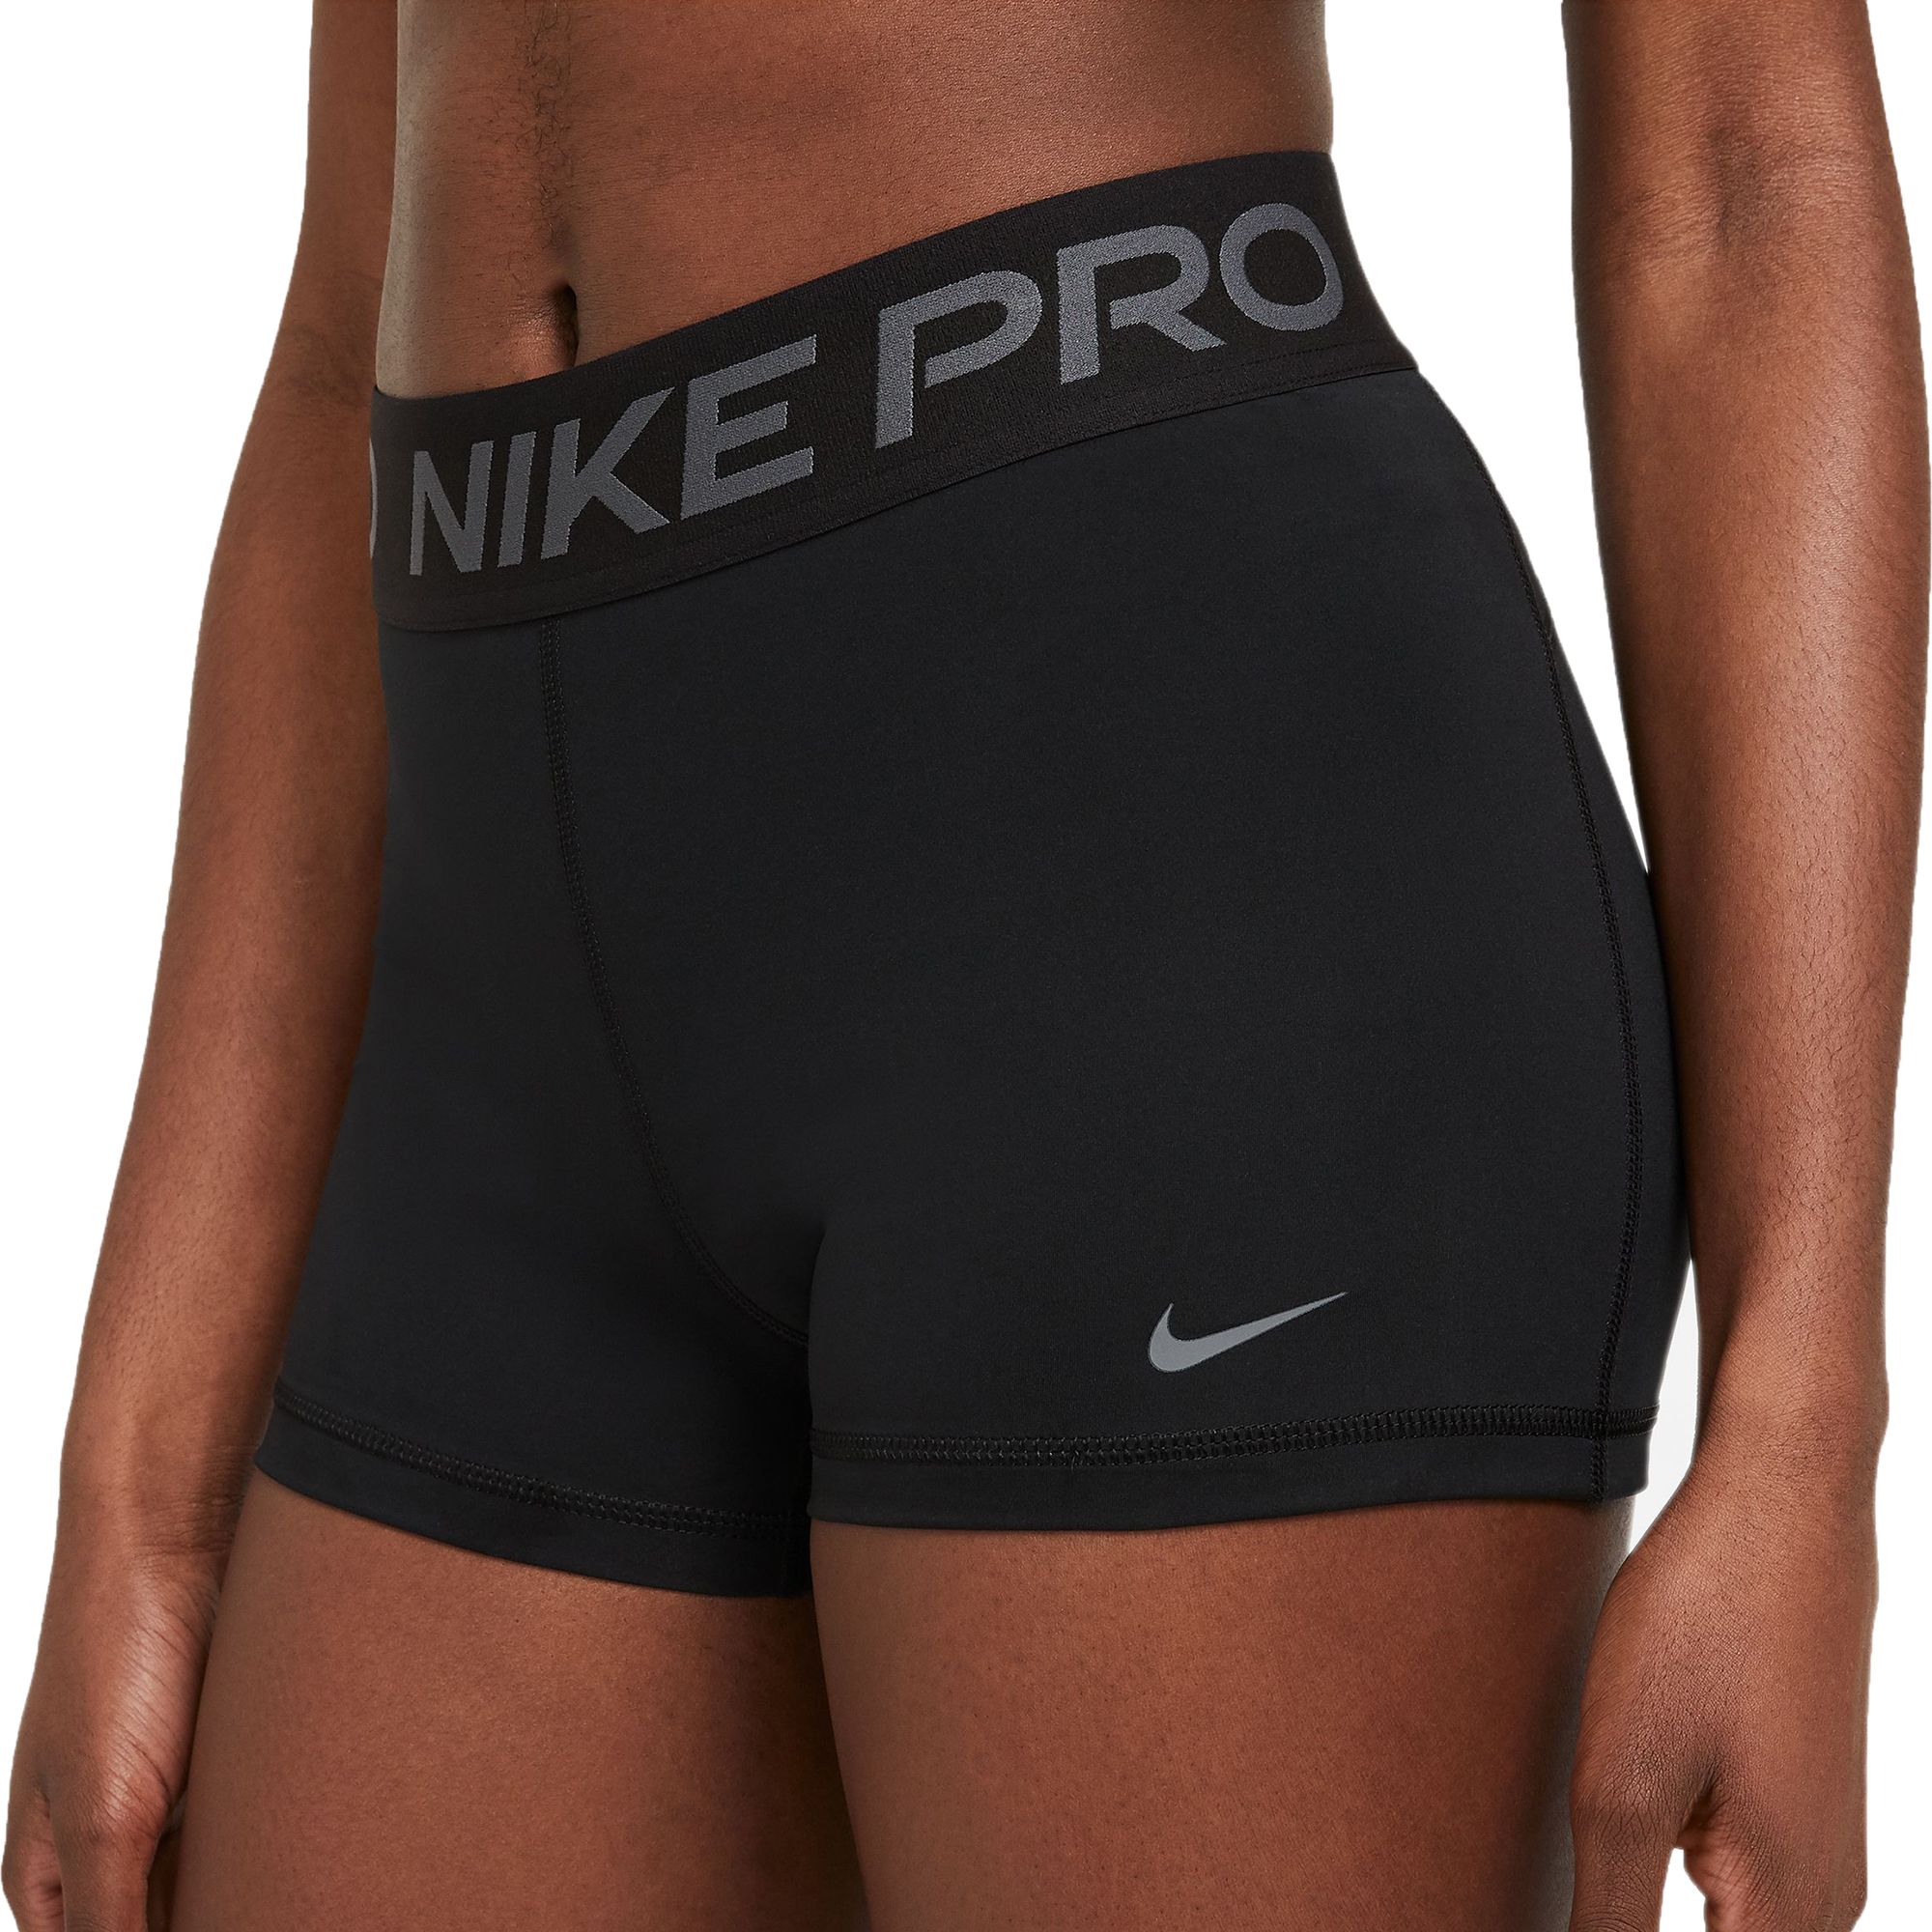 nike pro training 3 shorts black